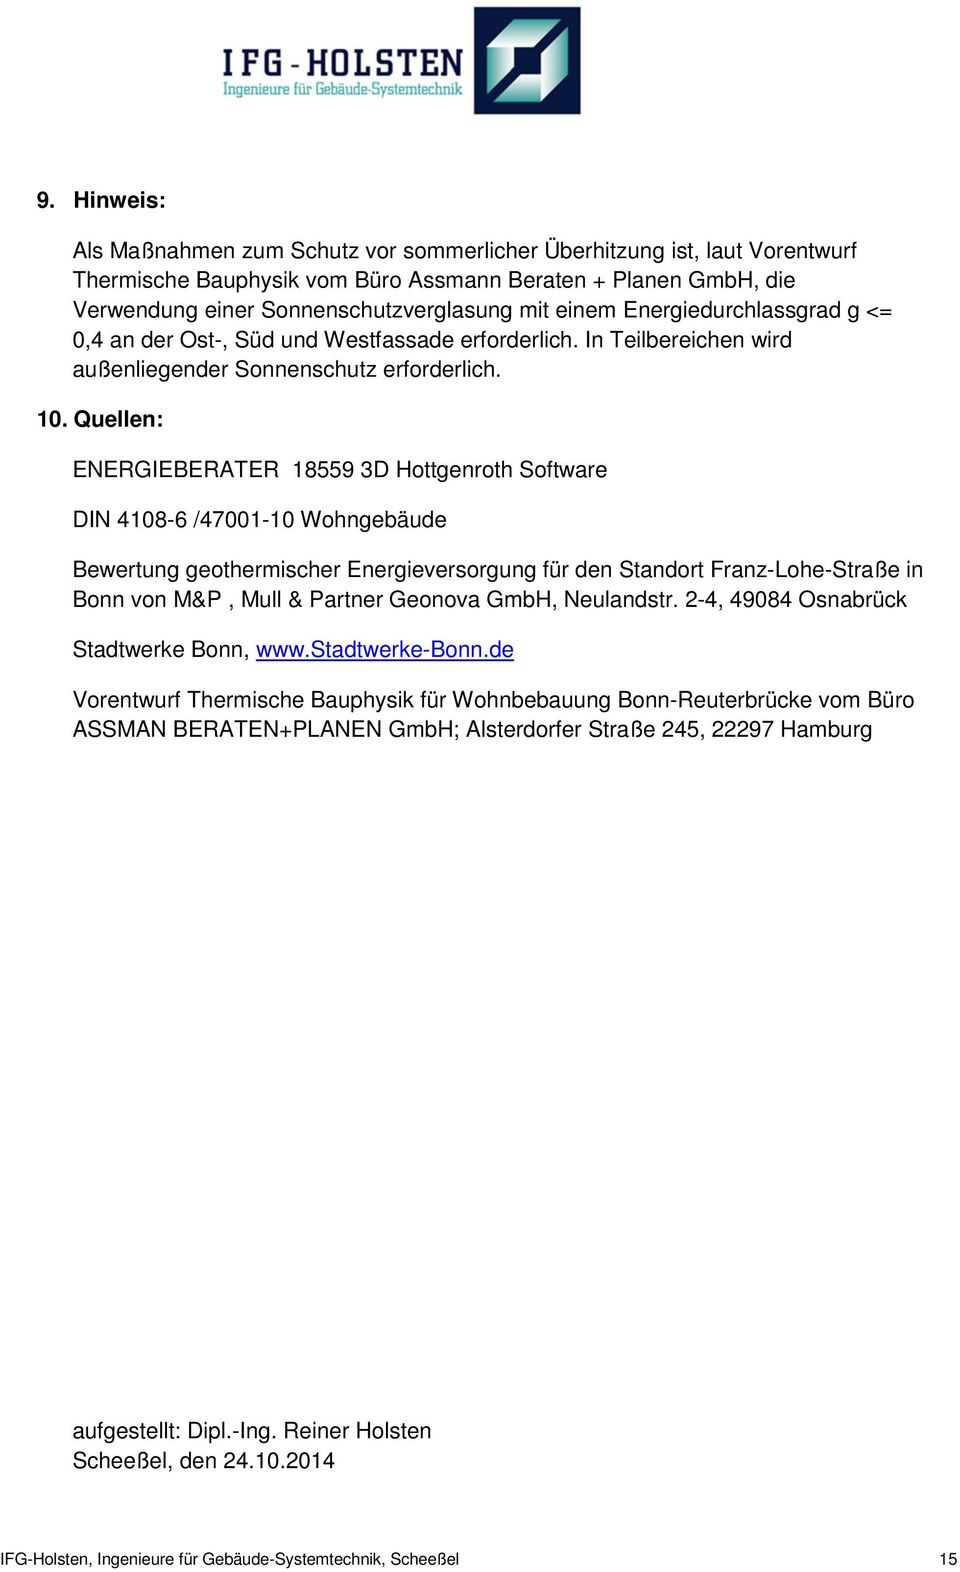 Quellen: ENERGIEBERATER 18559 3D Hottgenroth Software DIN 4108-6 /47001-10 Wohngebäude Bewertung geothermischer Energieversorgung für den Standort Franz-Lohe-Straße in Bonn von M&P, Mull & Partner